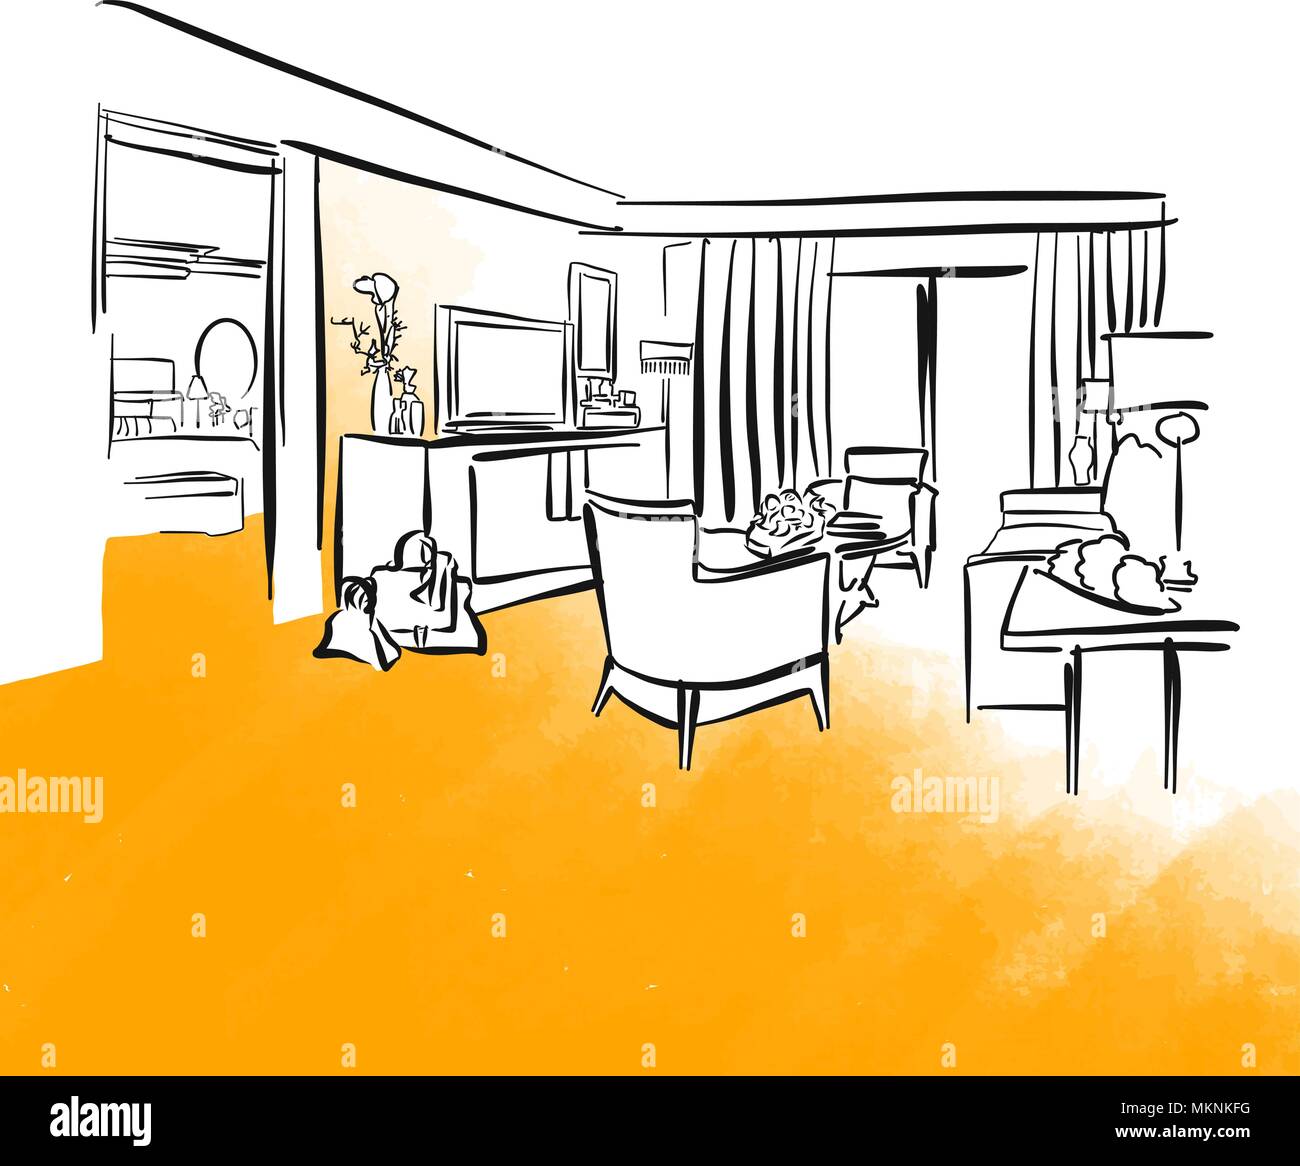 Chambre d'hôtel et le mobilier dessin de concept, vector illustration dessinée à la main Illustration de Vecteur